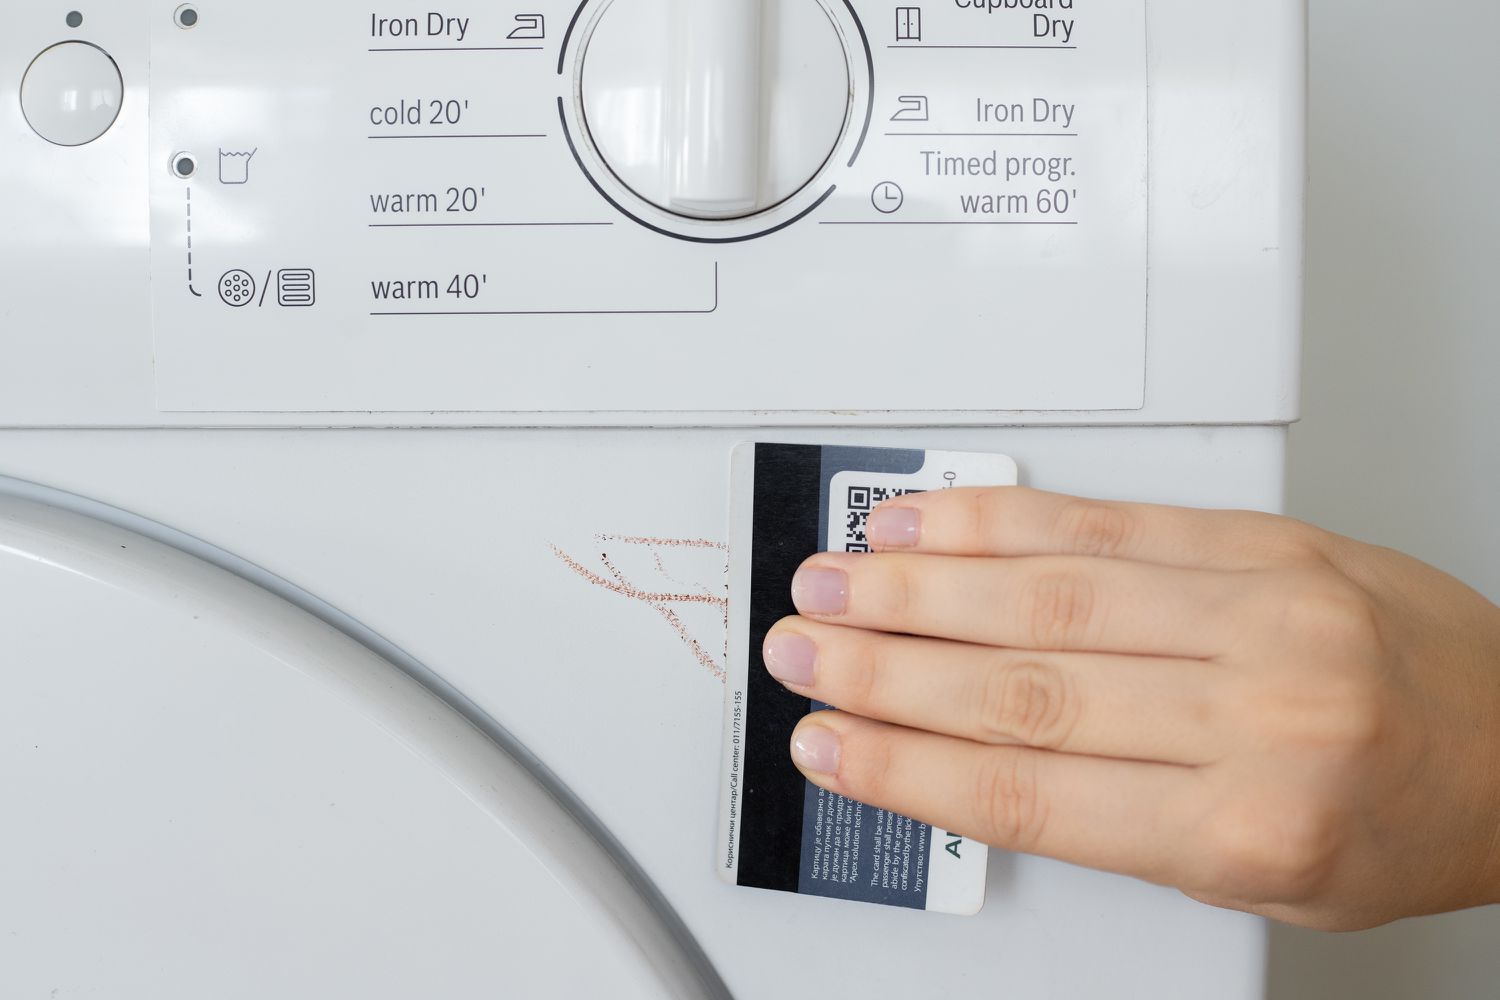 Borde de tarjeta de crédito raspando cera derretida del exterior de la lavadora